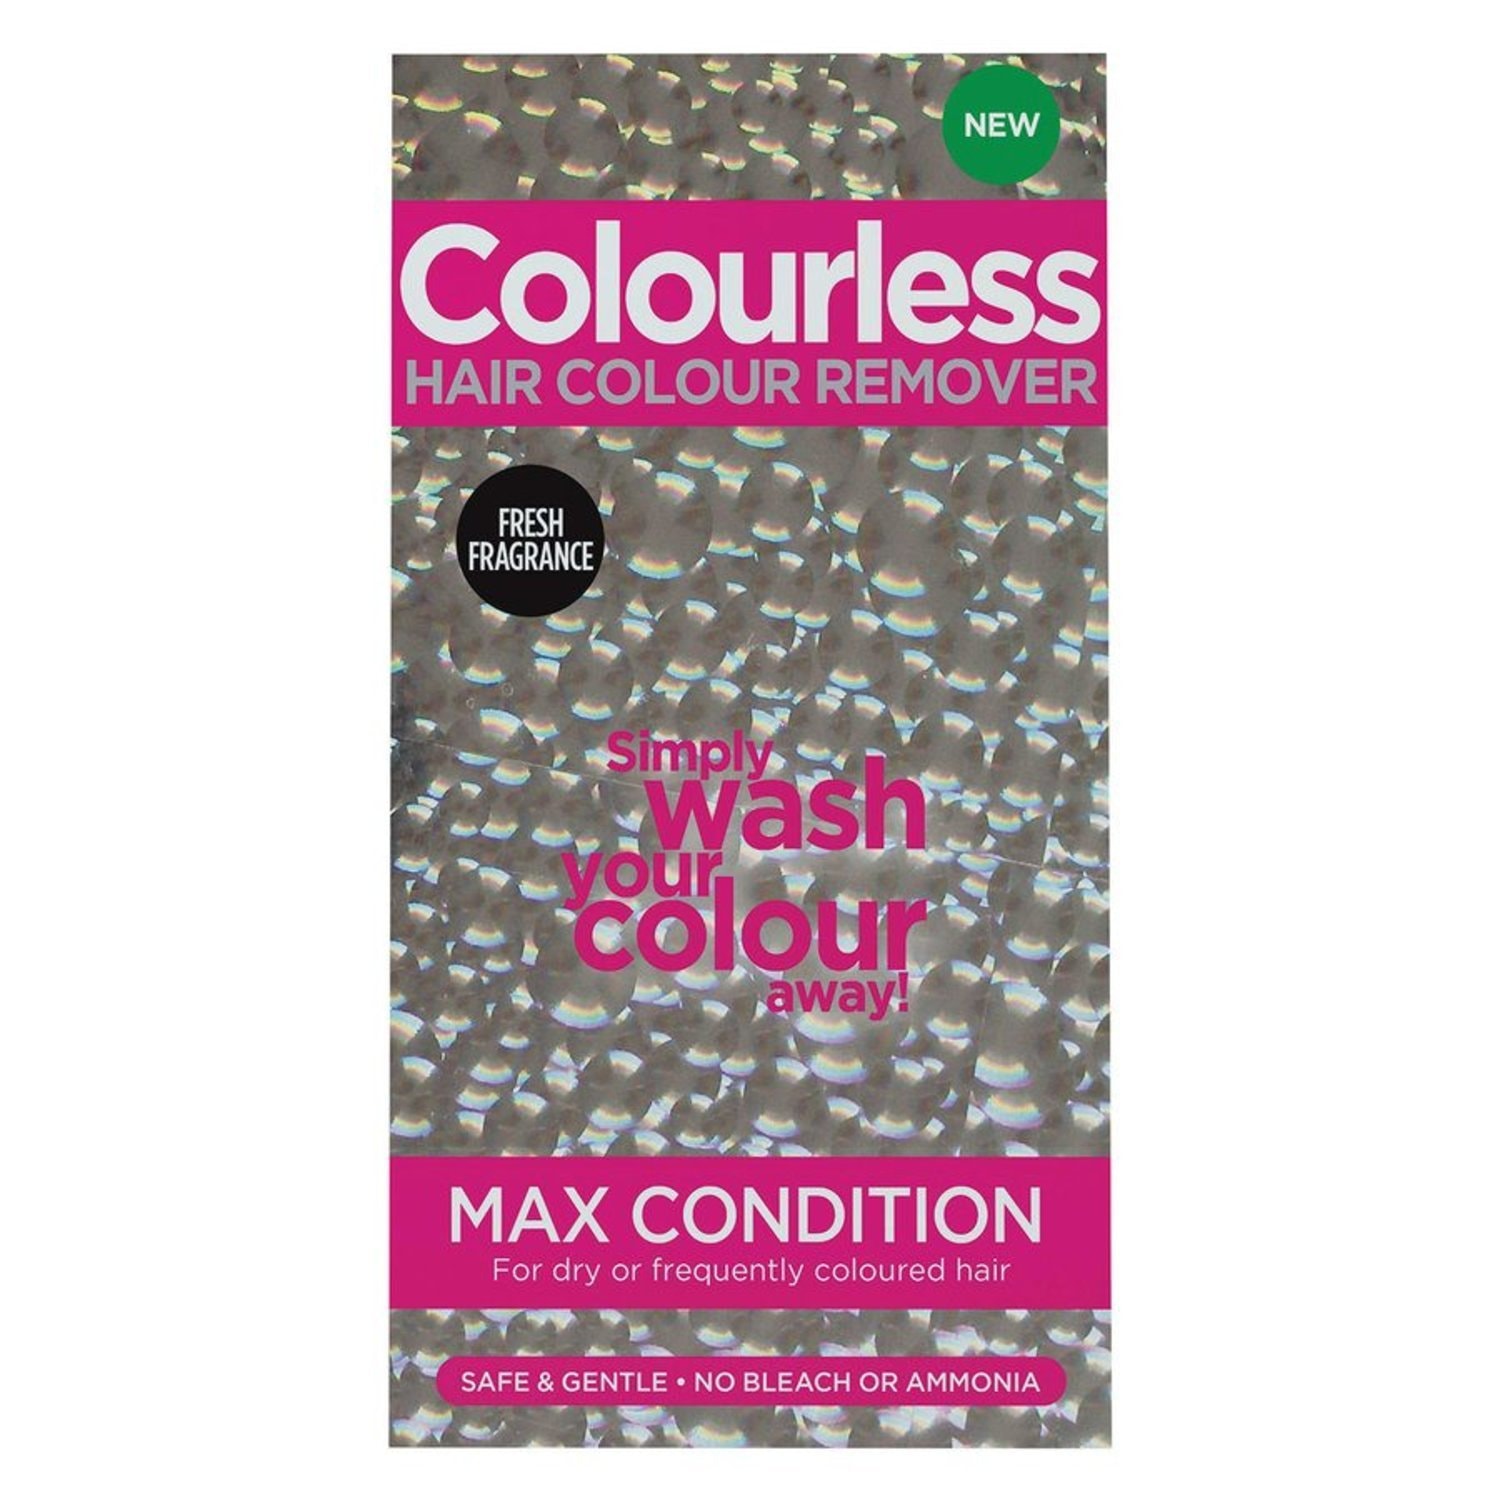 Colourless Hair Colour Remover Max Condition (1 av 2)